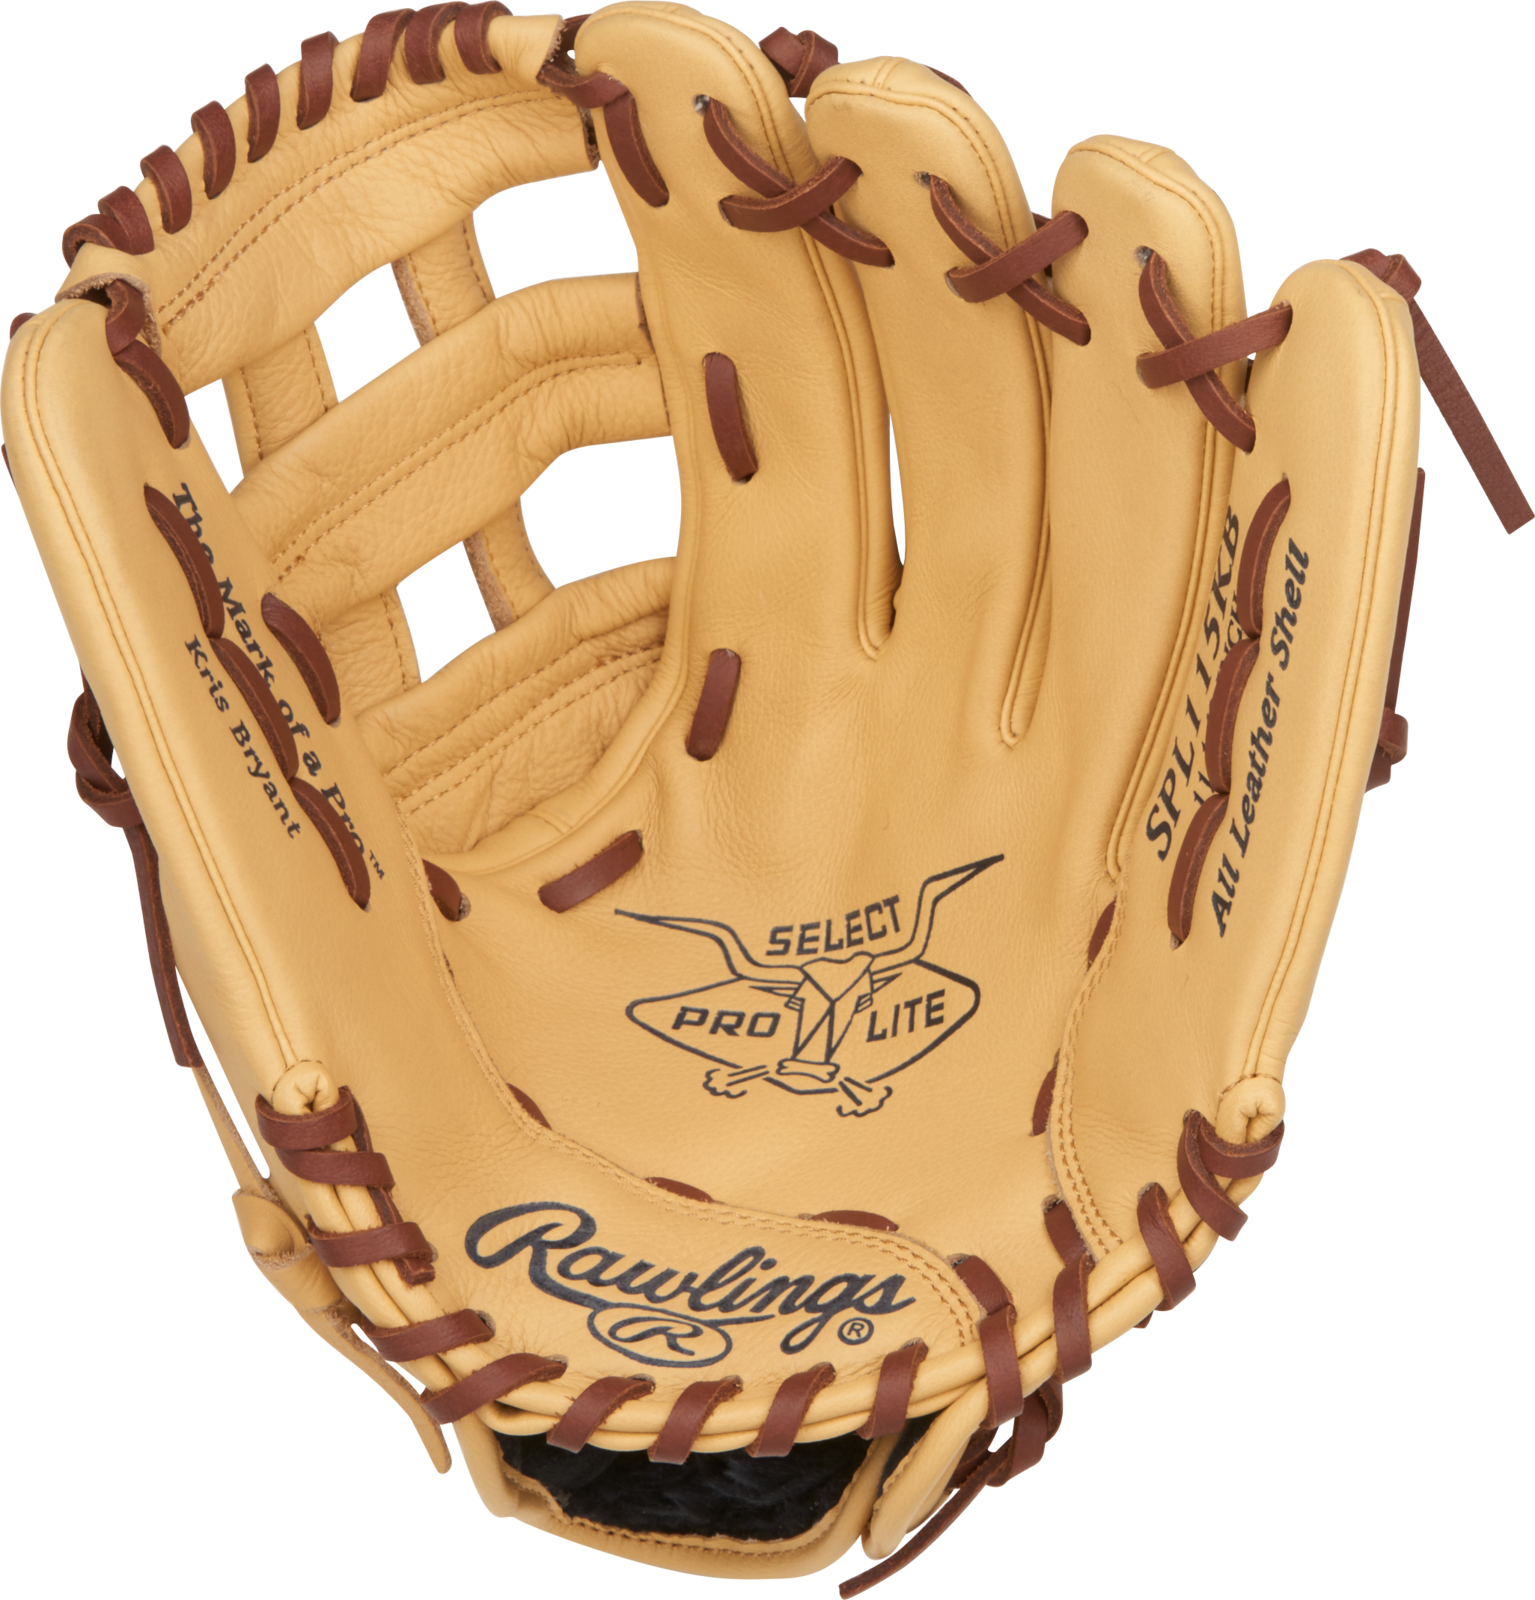 Rawlings Select Pro Lite Baseball Glove PNG